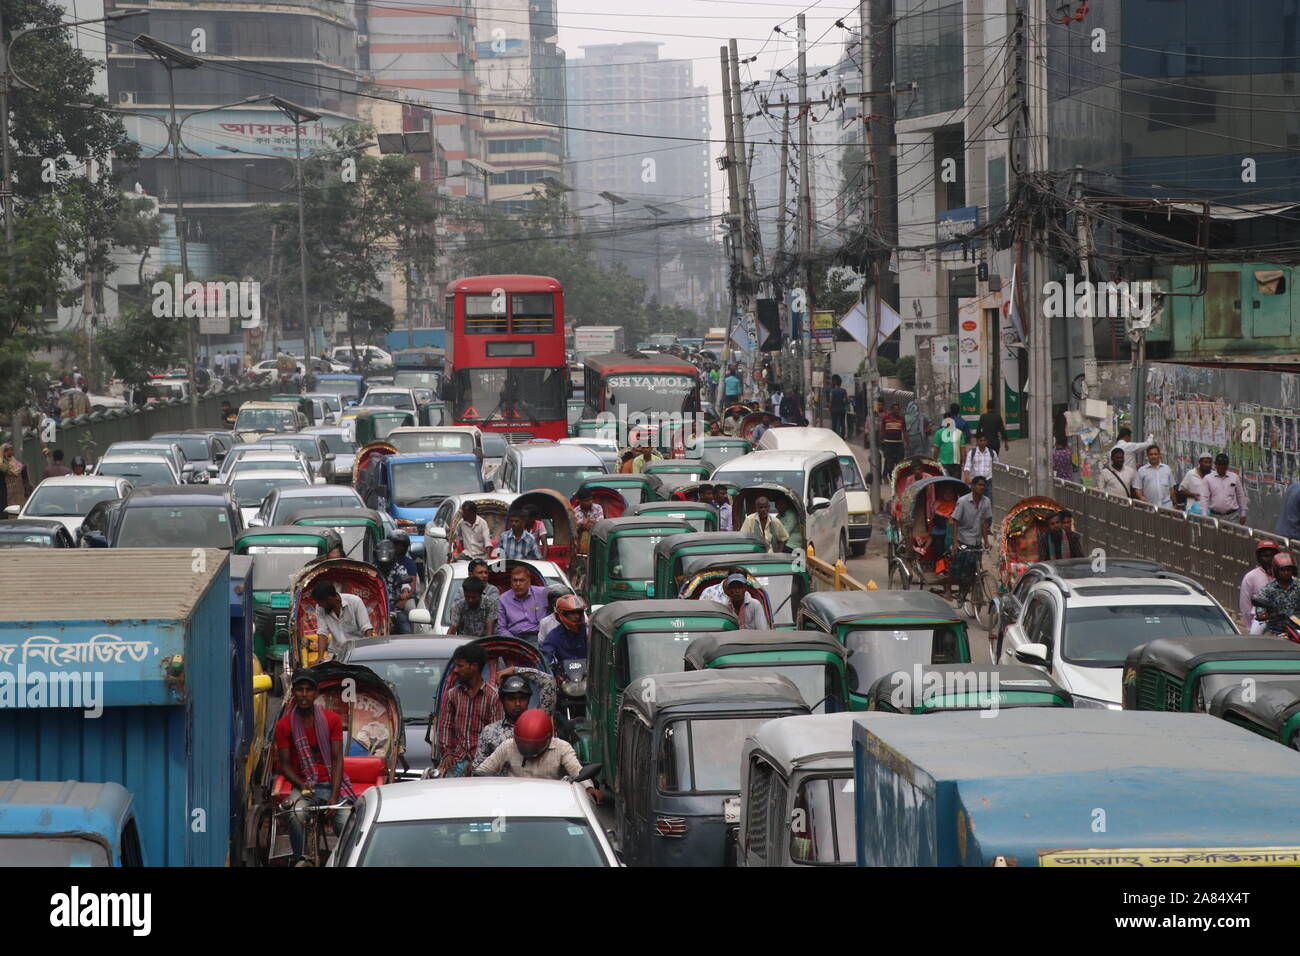 traffic jam 06 nov2019, traffic jam in dhaka bangladeshpurana paltan© Nazmul Islam/alamay live news Stock Photo